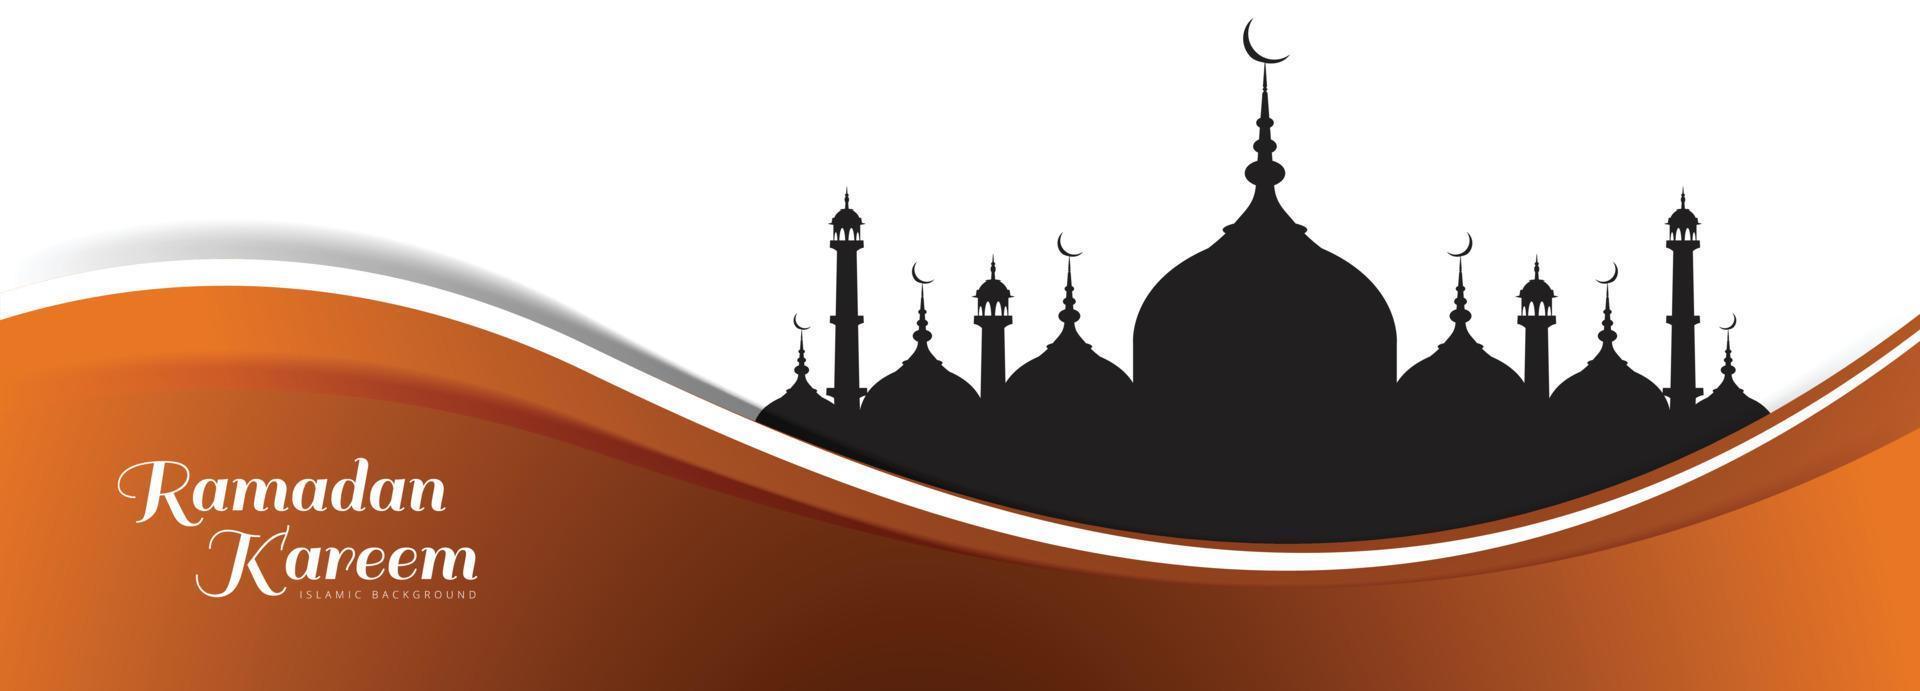 bellissimo design islamico della carta dell'insegna della moschea del ramadan kareem vettore